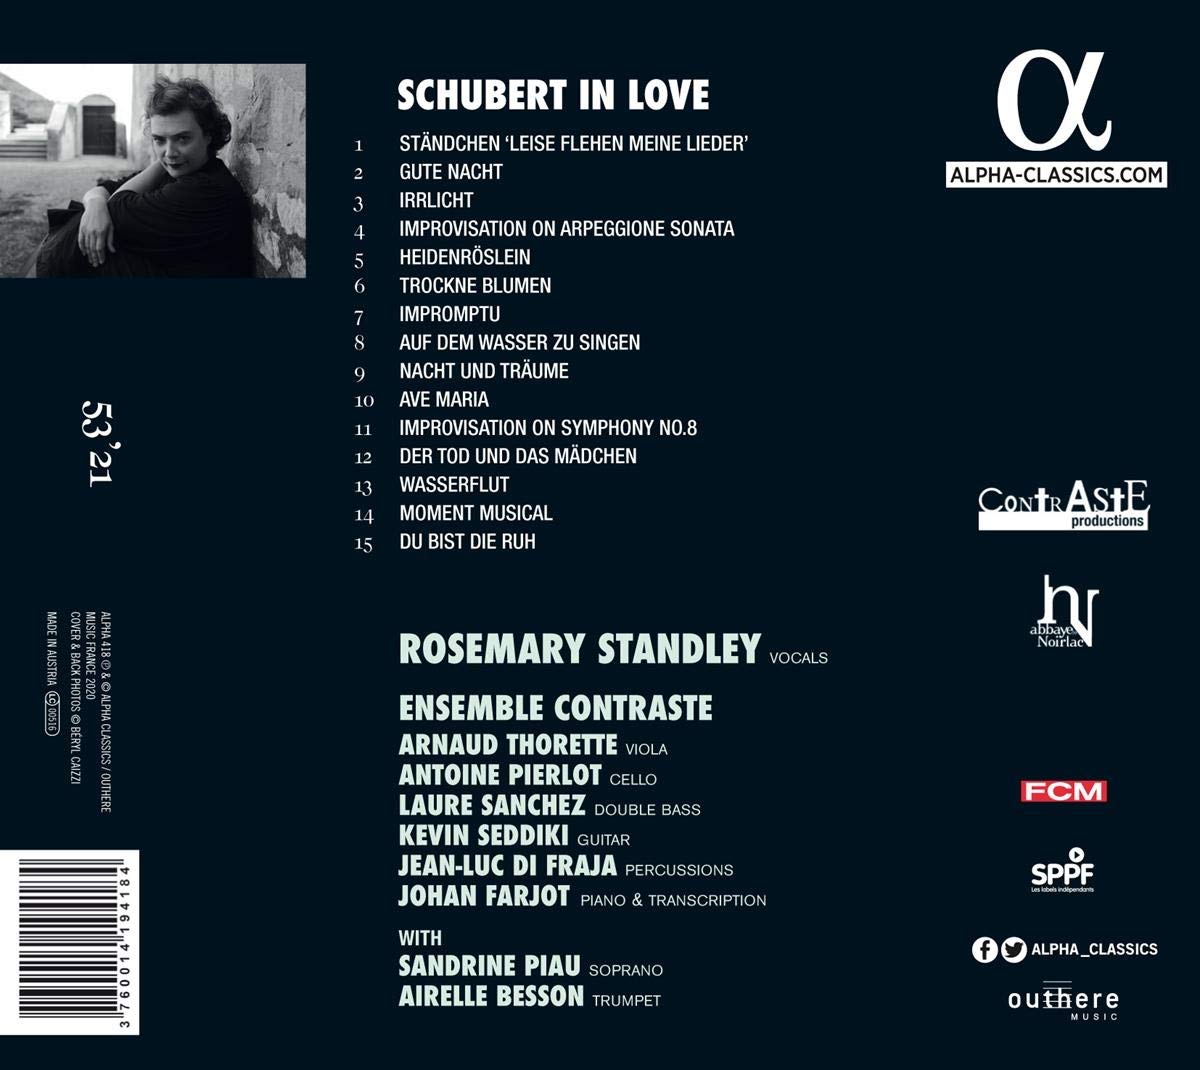 Rosemary Standley 팝과 포크의 감성으로 듣는 슈베르트 명곡 (Schubert in Love) 